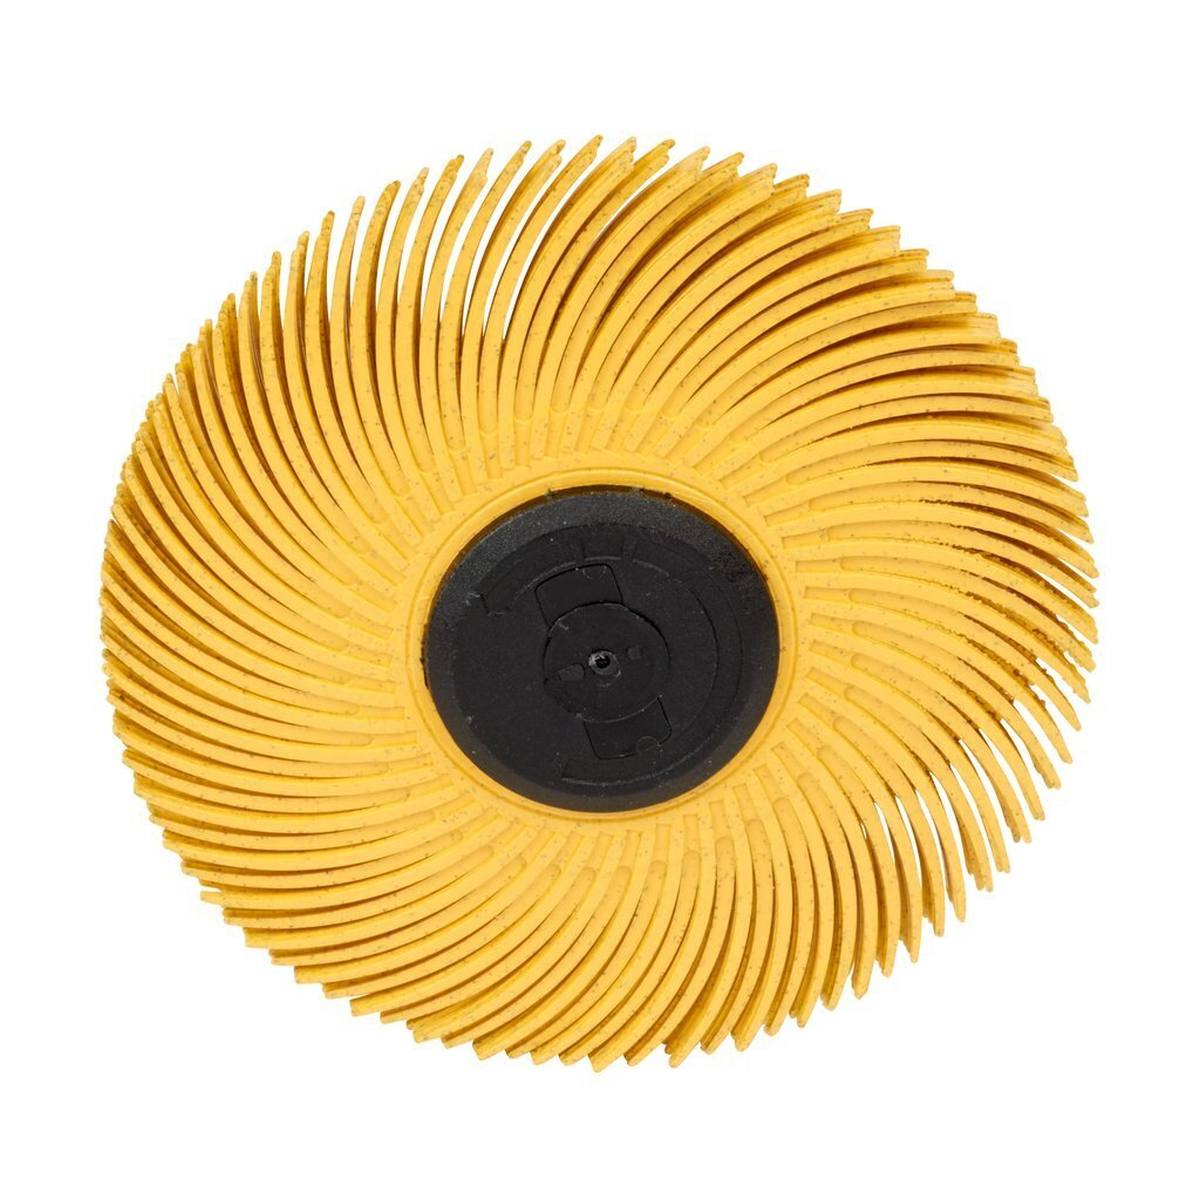 3M Scotch-Brite Radial Bristle Disc BB-ZS mit Schaft, gelb, 76,2 mm, P80, Typ C #62968